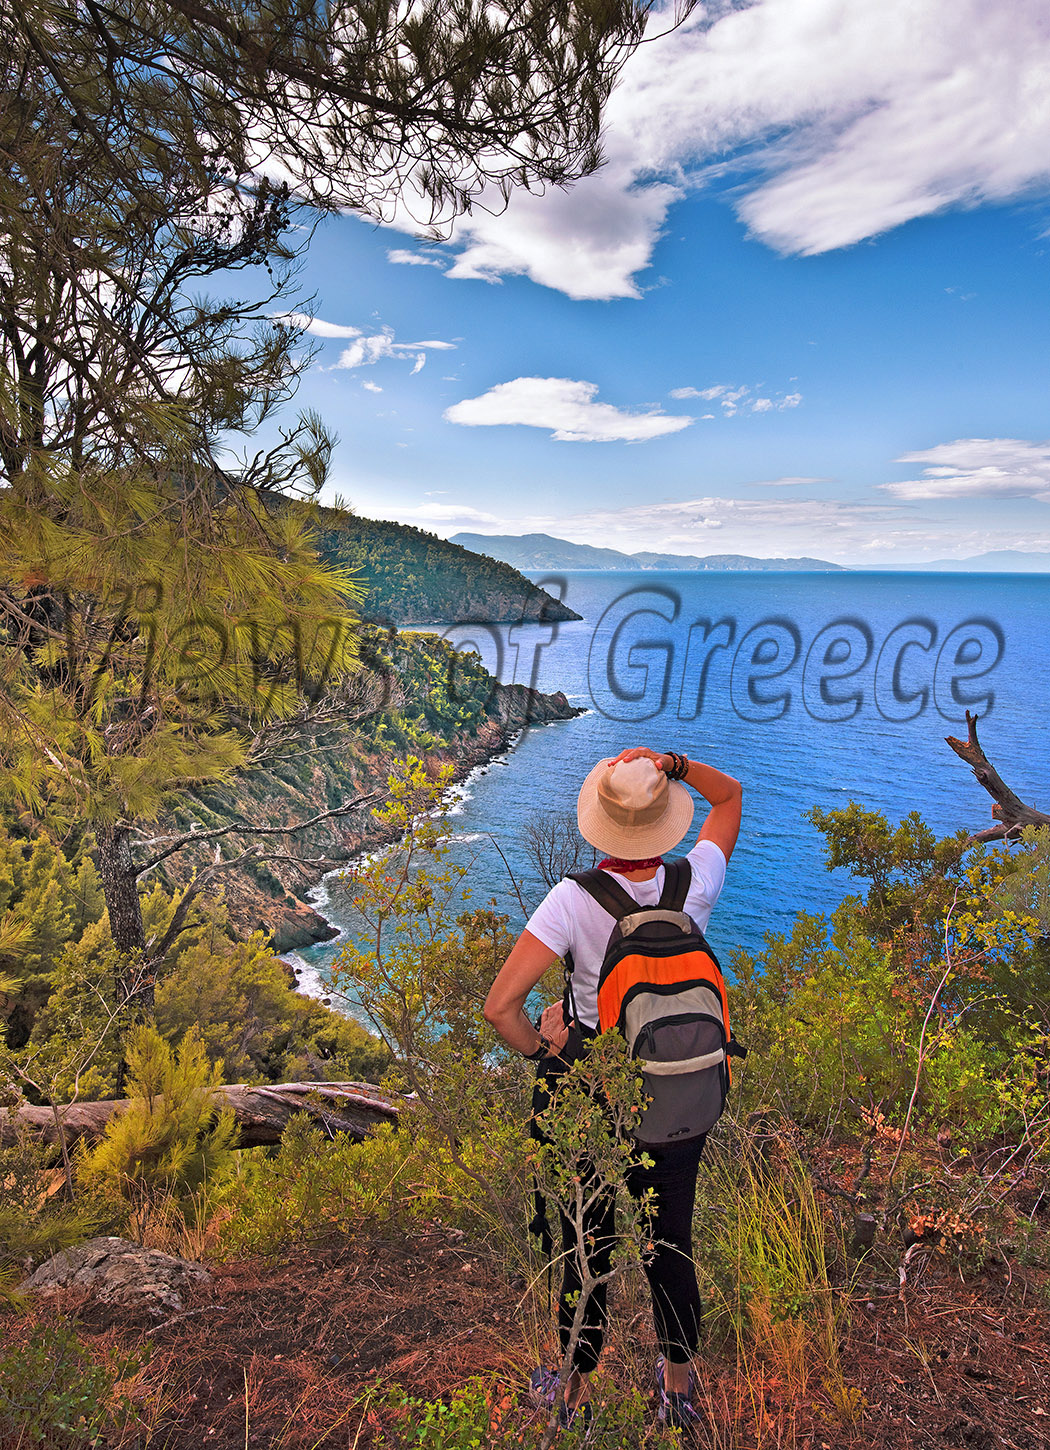 greece, greek, mediterranean, aegean, sporades, water, alonnisos island, beach, Αλόννησος, Σποράδες, φώκια, θαλάσσιο πάρκο, Mom